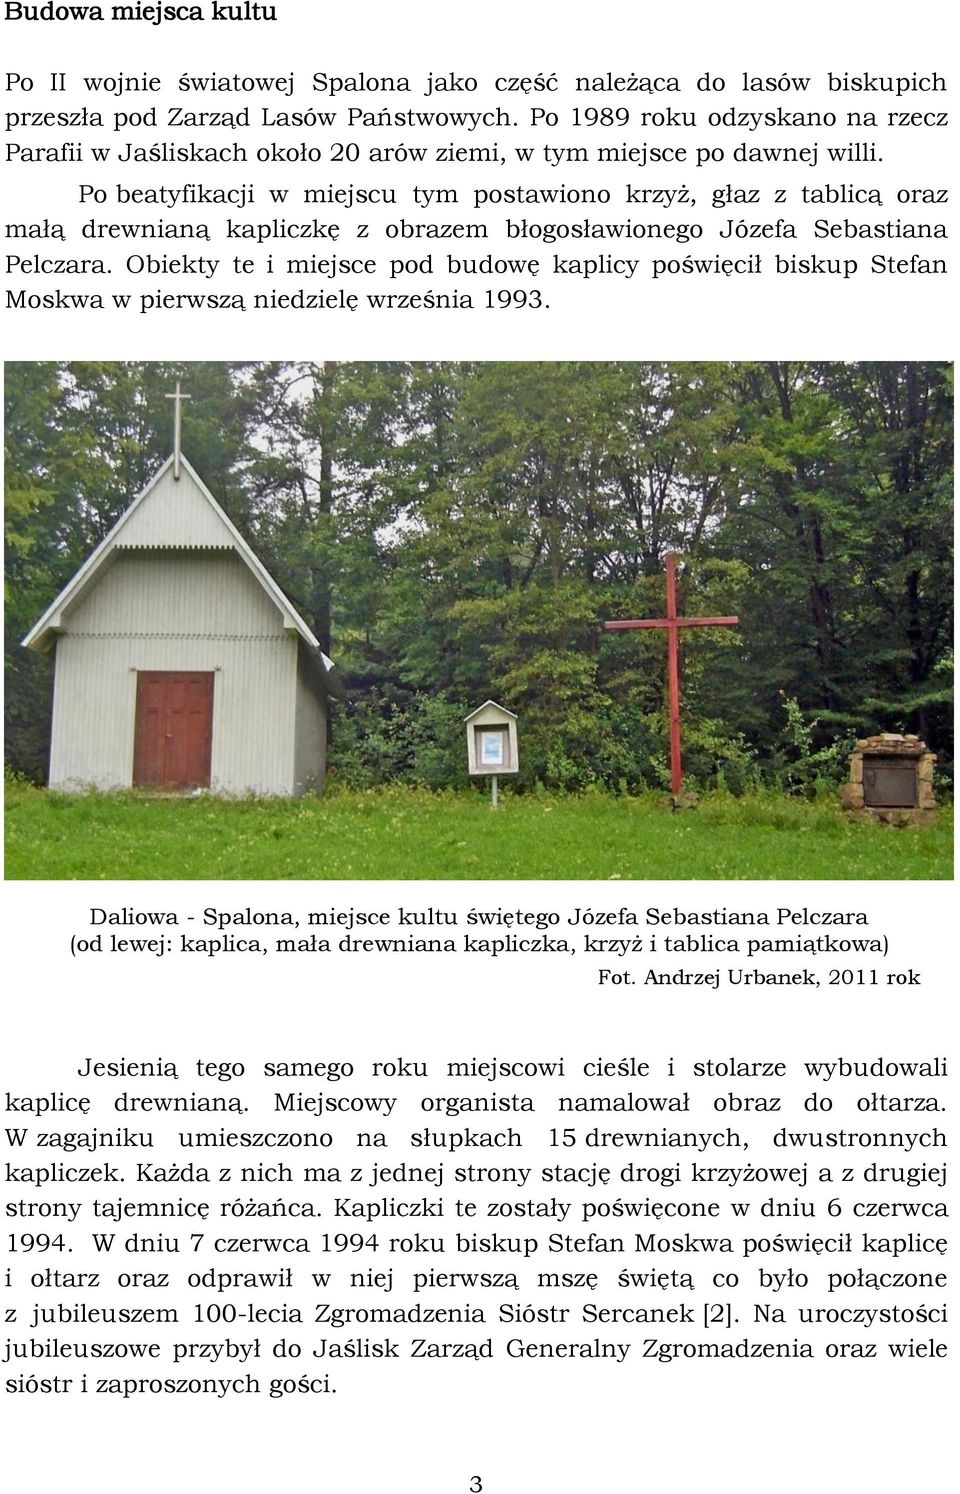 Po beatyfikacji w miejscu tym postawiono krzyż, głaz z tablicą oraz małą drewnianą kapliczkę z obrazem błogosławionego Józefa Sebastiana Pelczara.